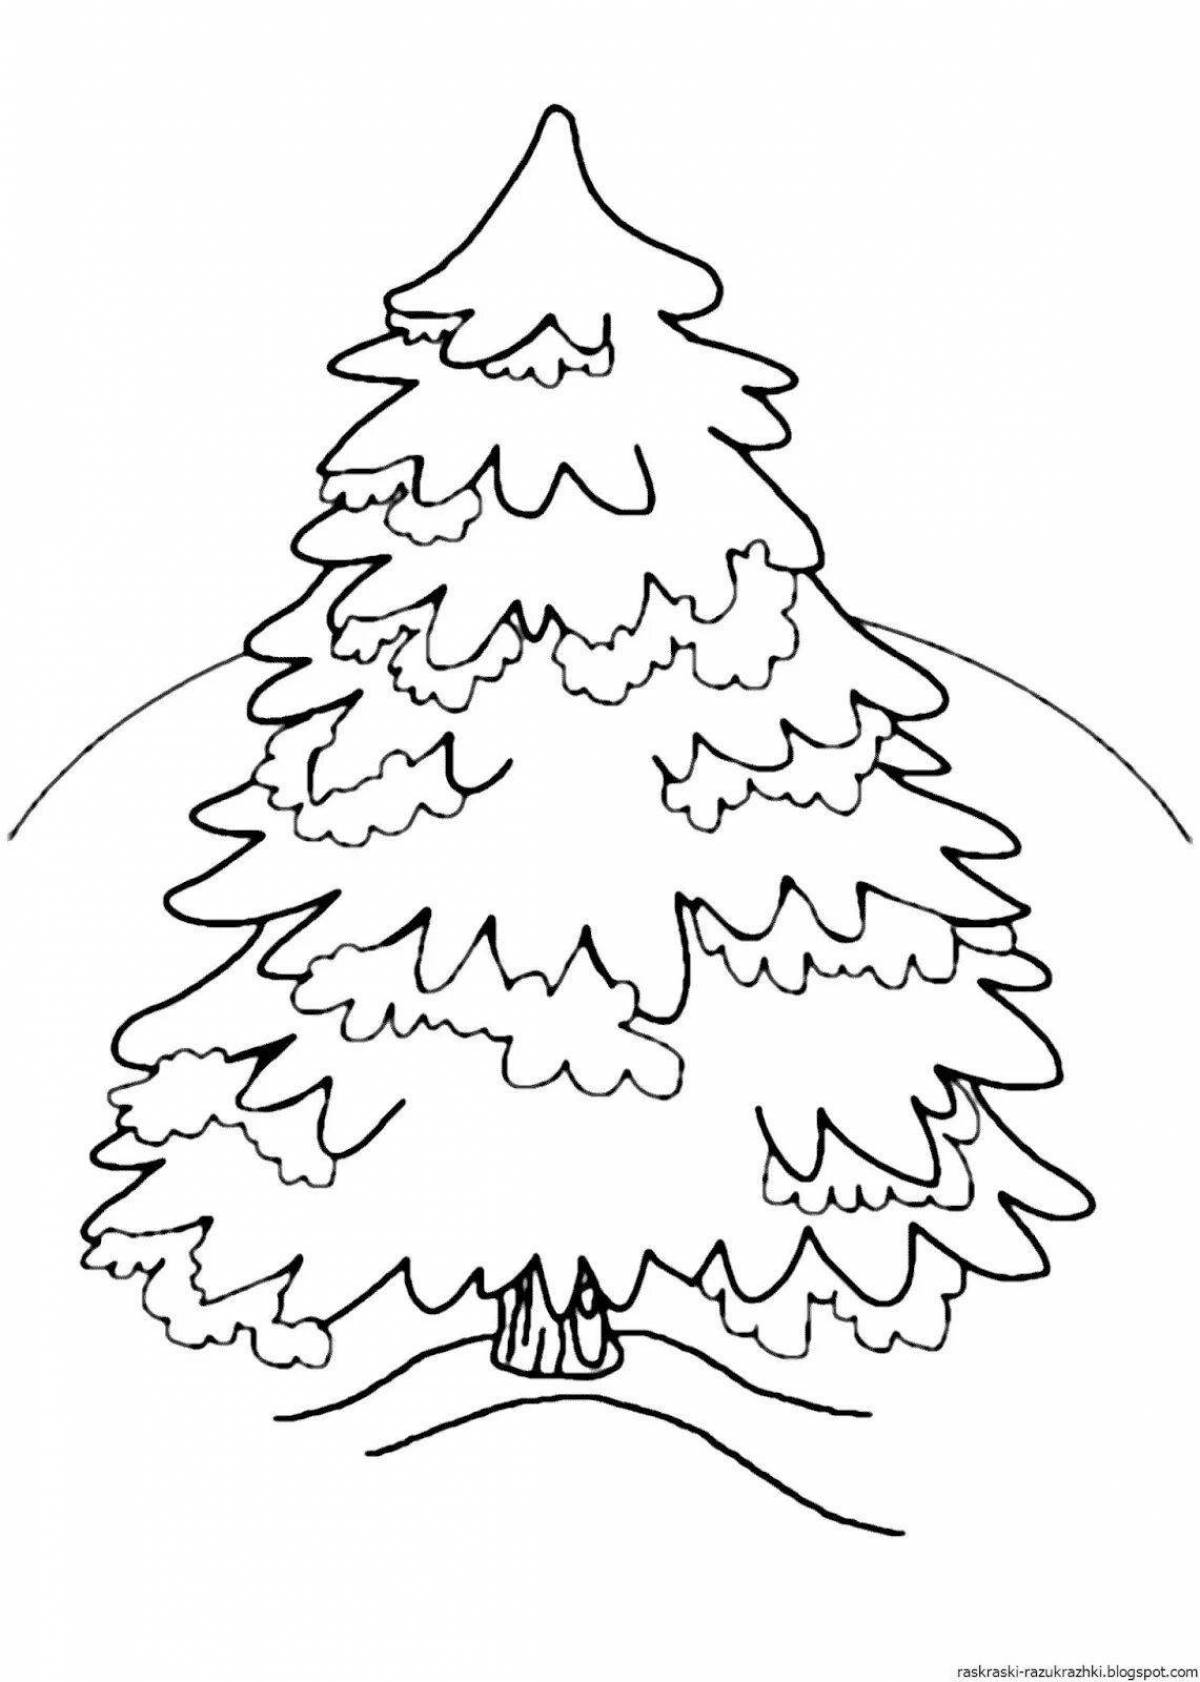 Яркий шаблон раскраски рождественской елки